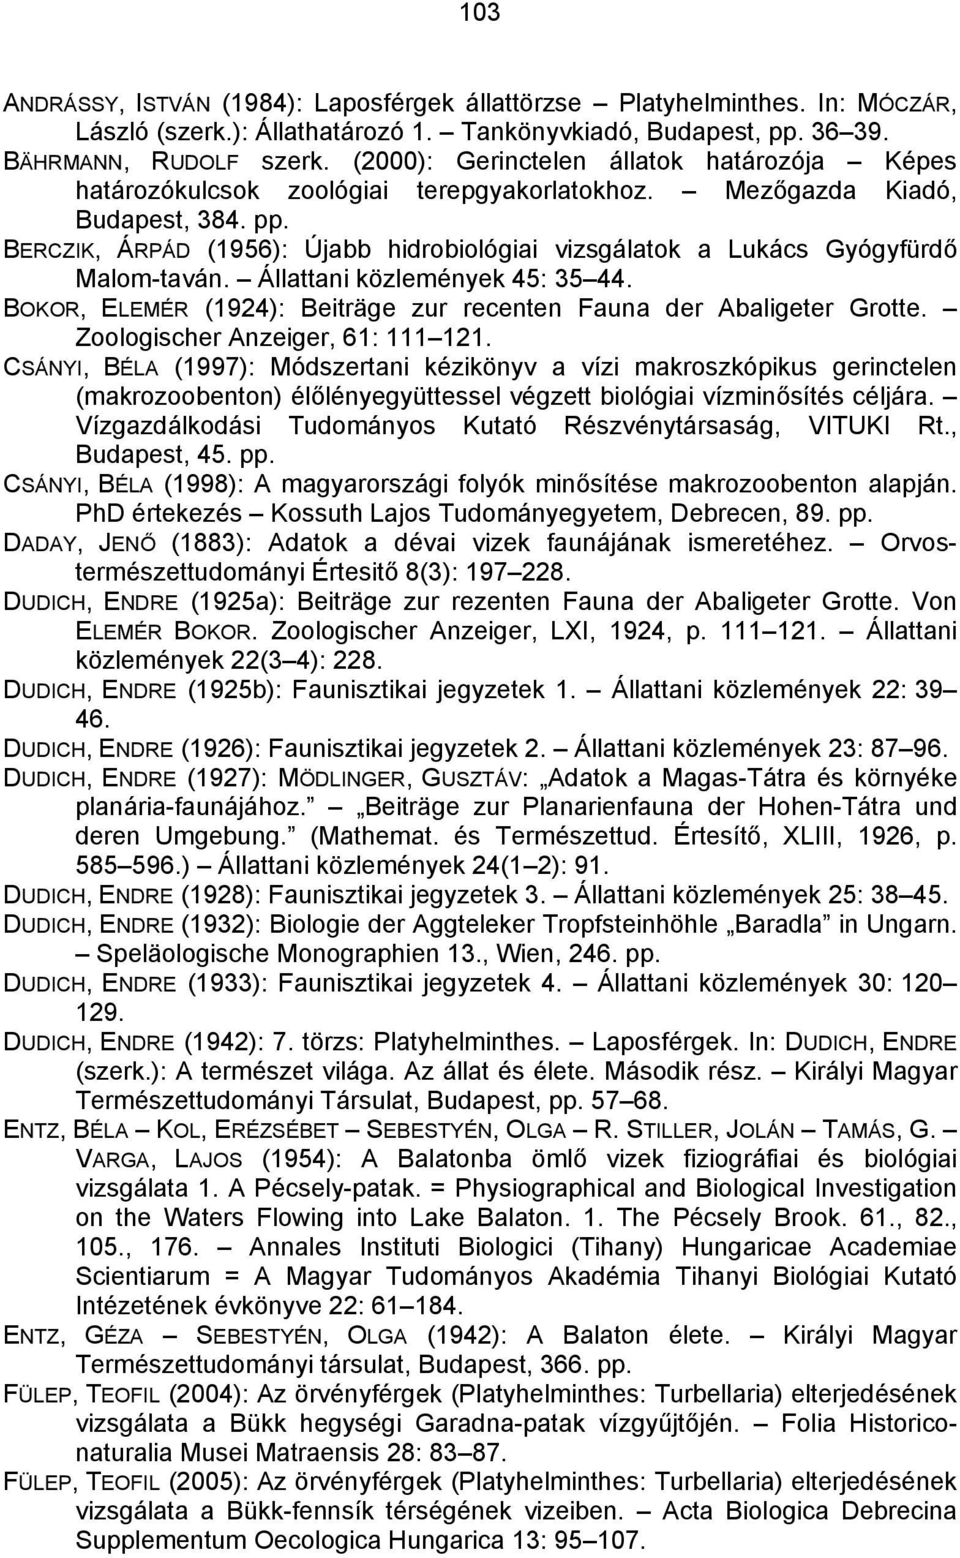 BERCZIK, ÁRPÁD (1956): Újabb hidrobiológiai vizsgálatok a Lukács Gyógyfürdő Malom-taván. Állattani közlemények 45: 35 44. BOKOR, ELEMÉR (1924): Beiträge zur recenten Fauna der Abaligeter Grotte.